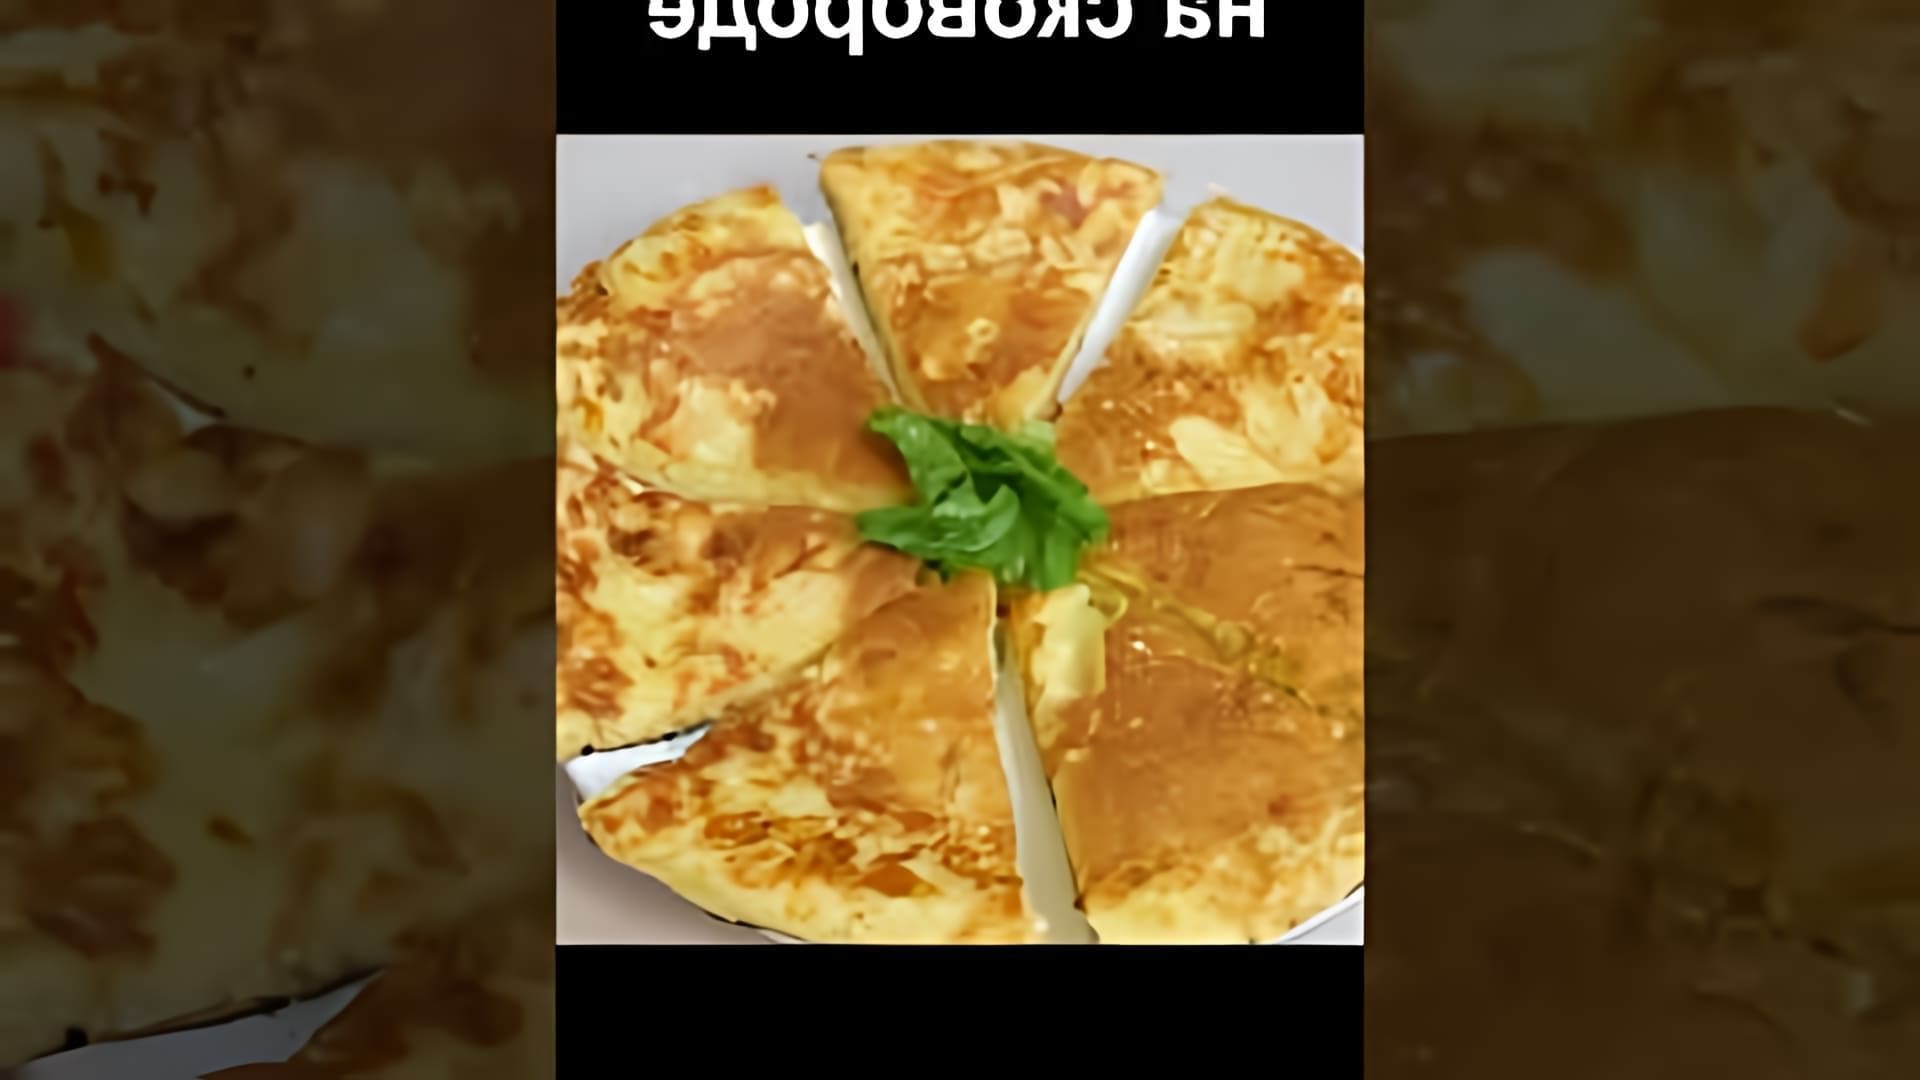 В этом видео демонстрируется рецепт приготовления ленивого хачапури на сковороде